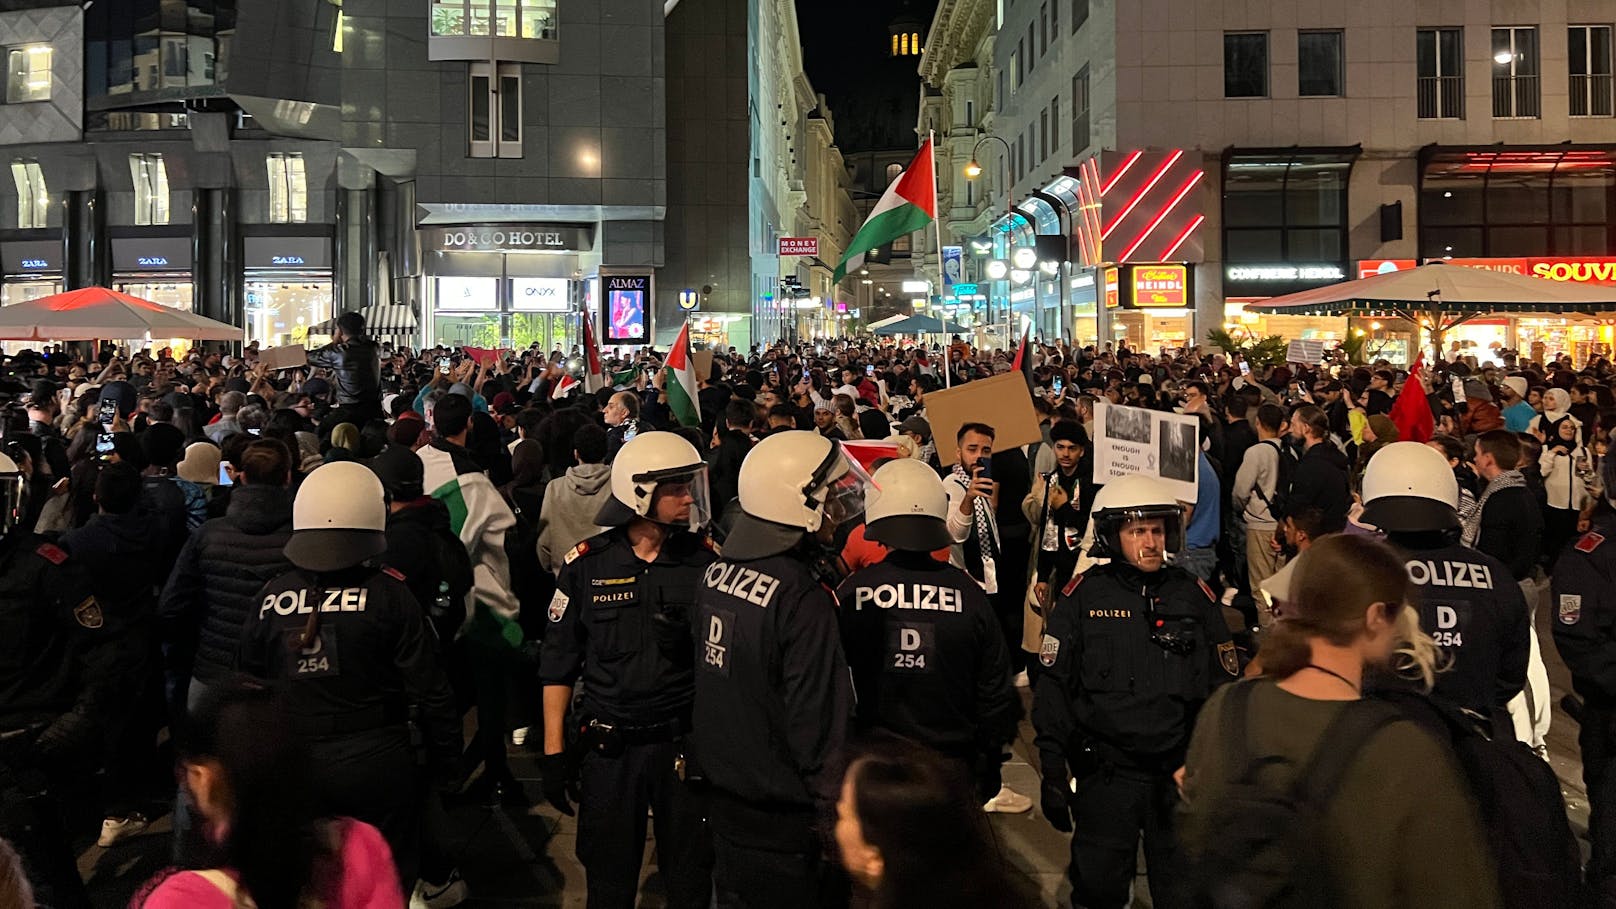 Trotz Verbot sammelten sich mehrere hundert Hamas-Unterstützer mit Palästina-Flaggen am Wiener Stephansplatz.